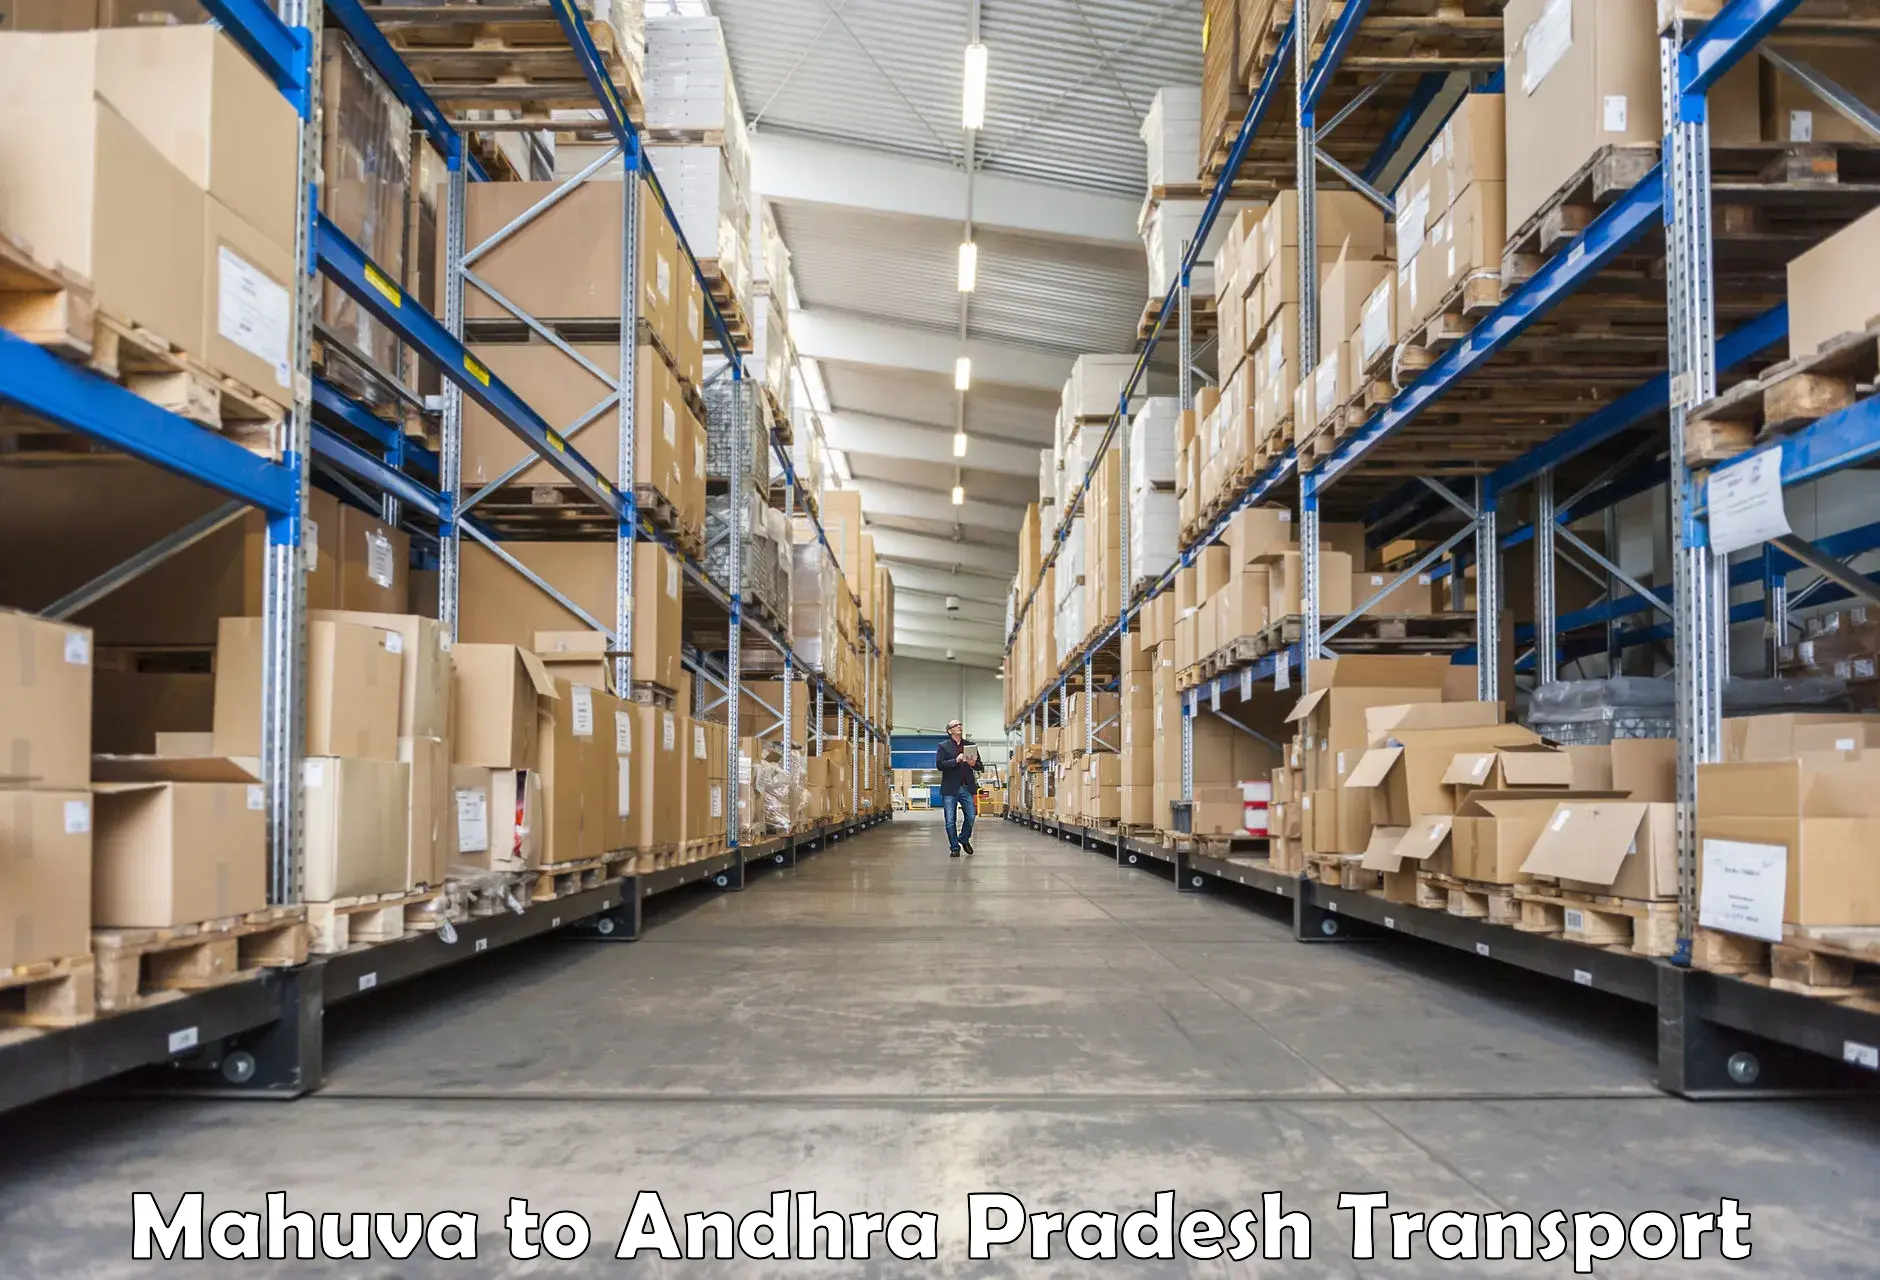 Truck transport companies in India Mahuva to Ramachandrapuram